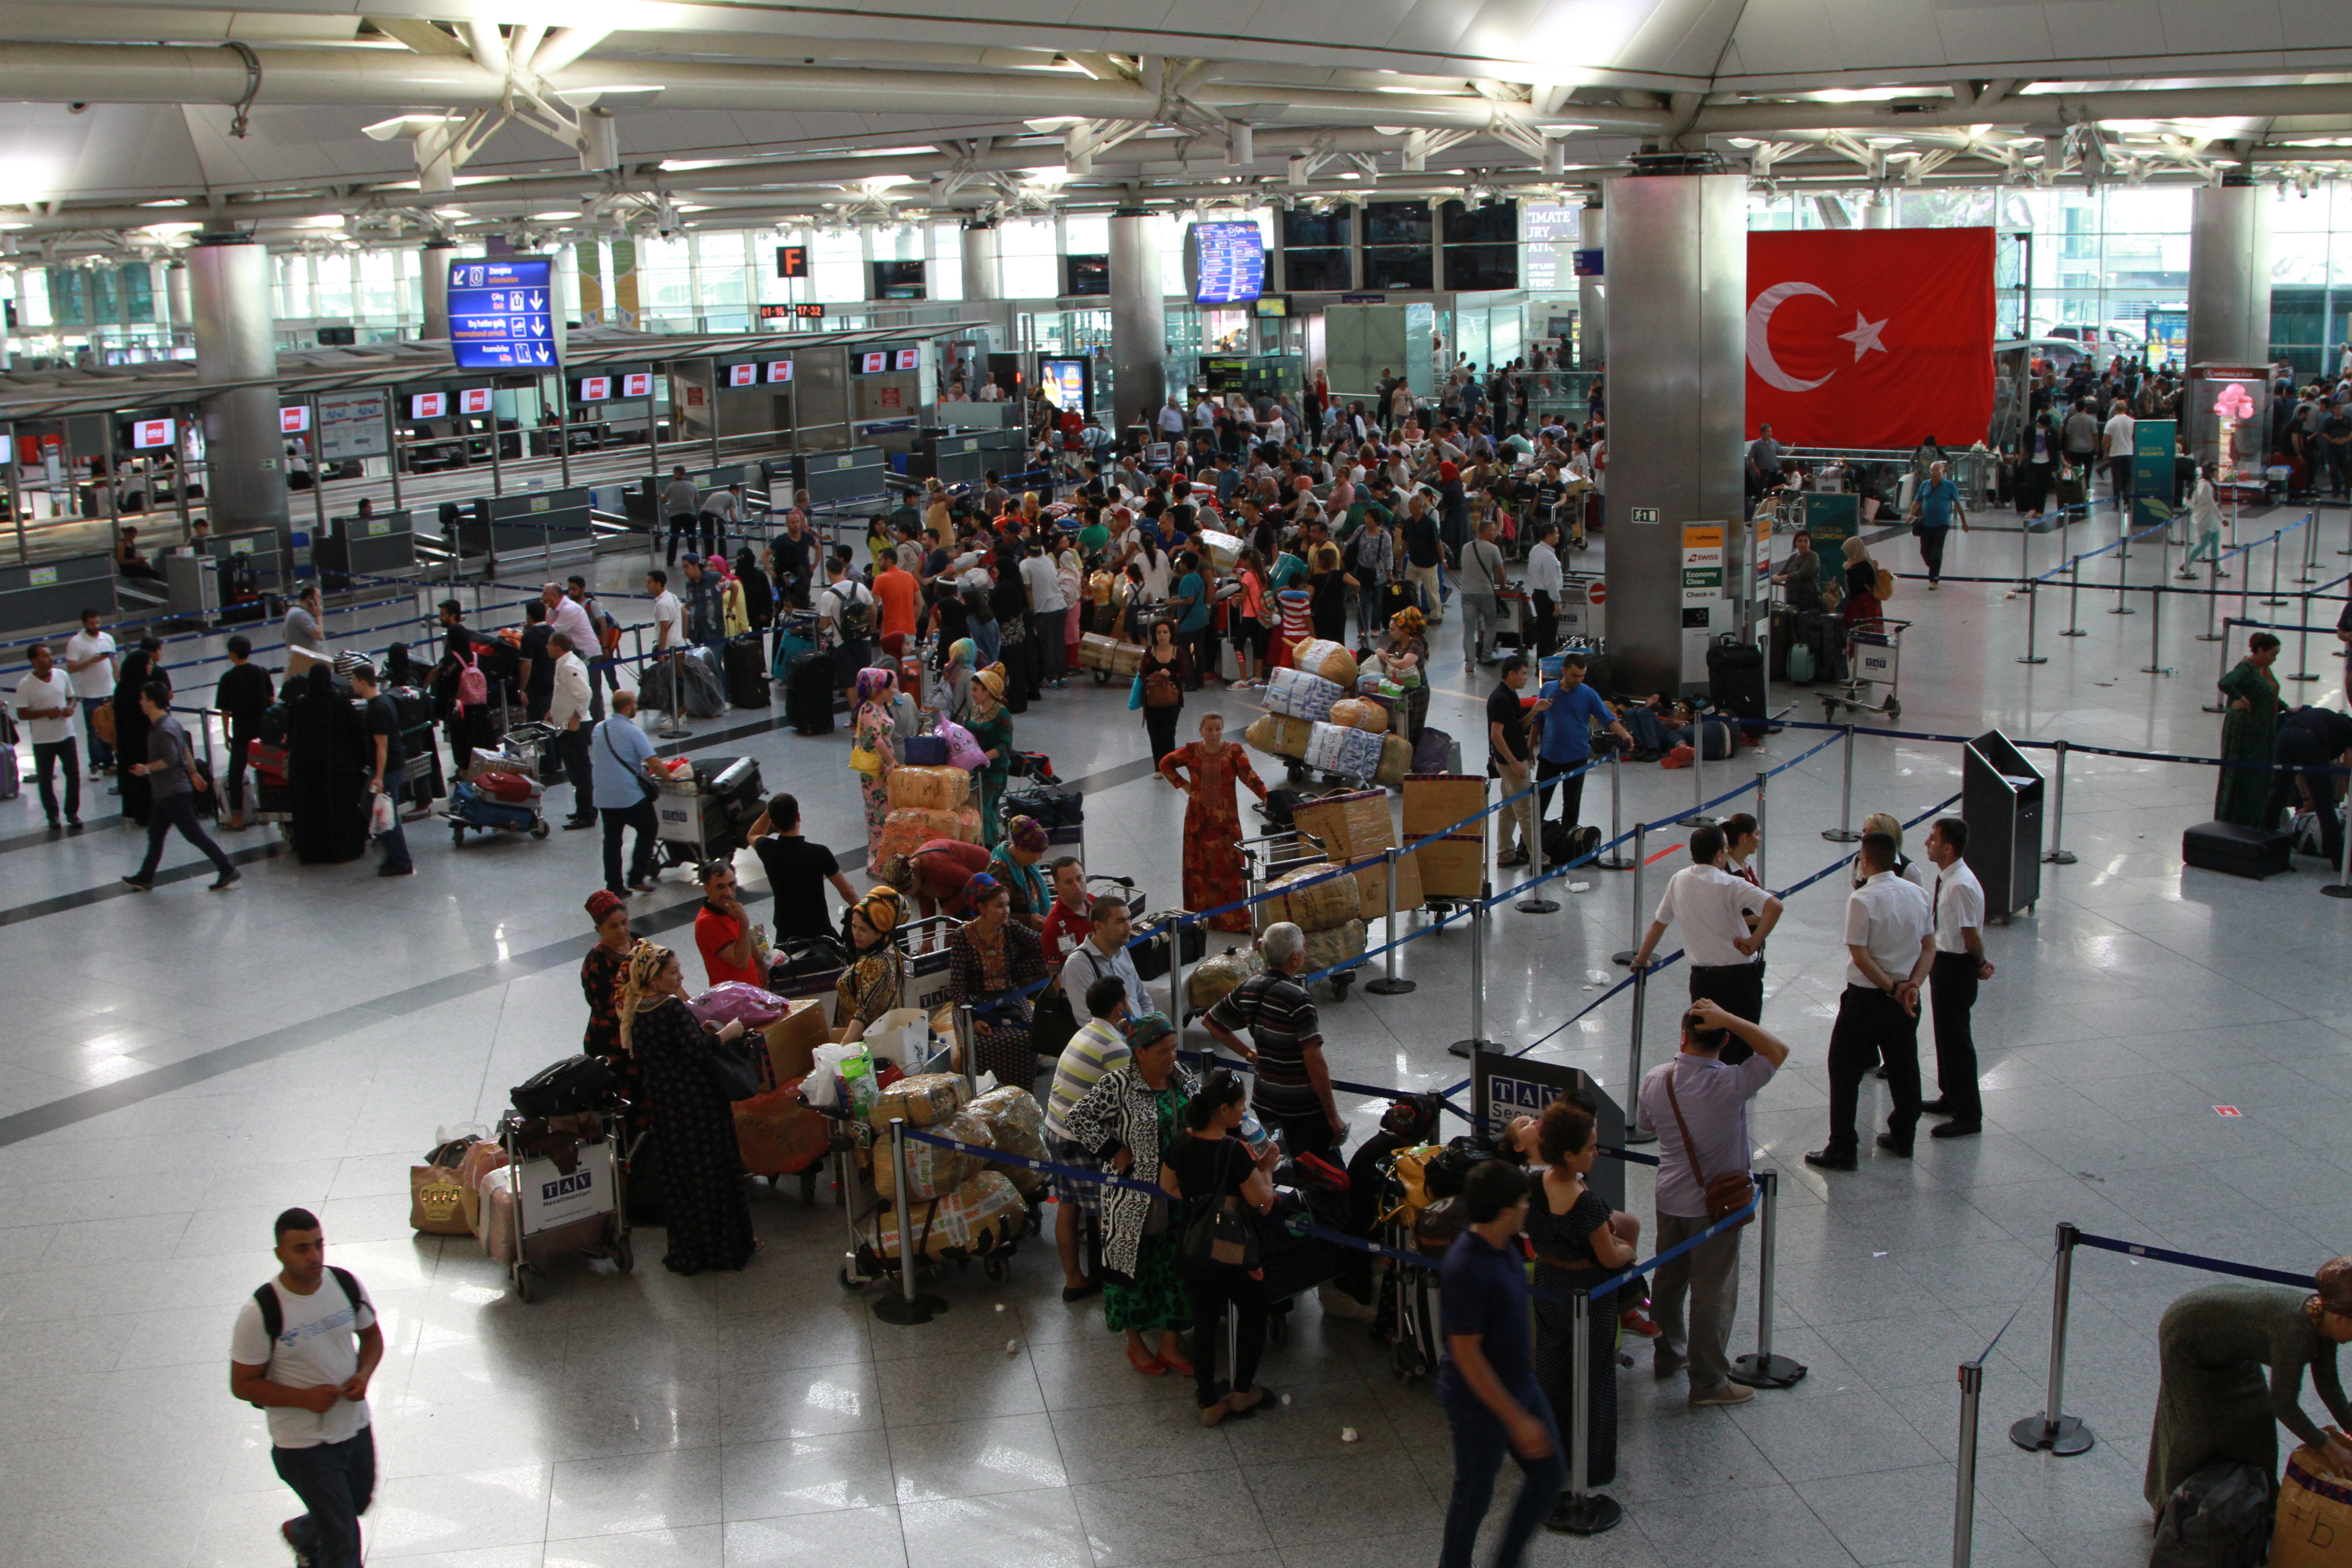 Турецкие авиалинии (THY) отменили в общей сложности 925 рейсов из-за попытки госпереворота террористической организации Фетхуллаха (FETÖ)